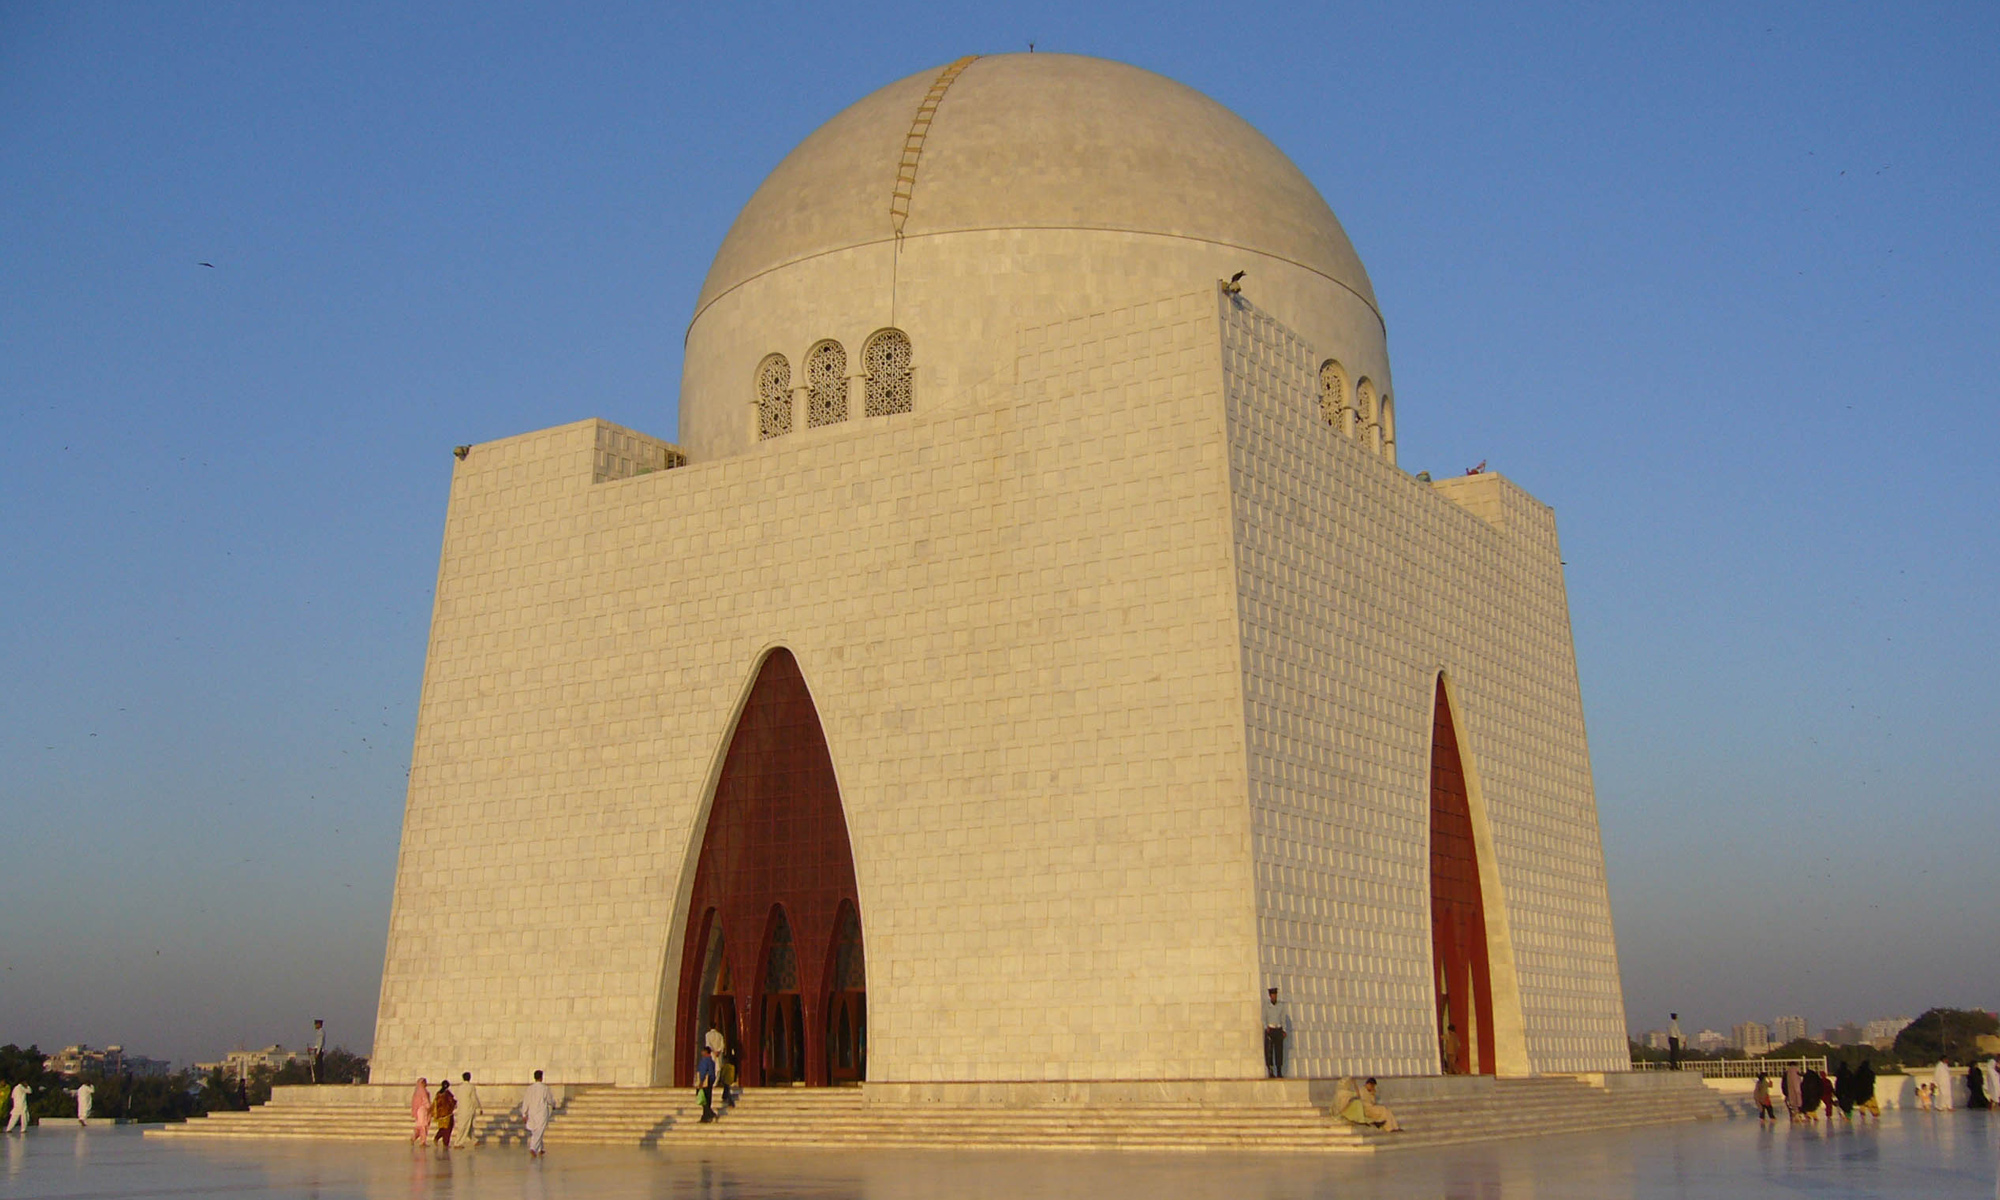 Quaid-e-Azam-mazar